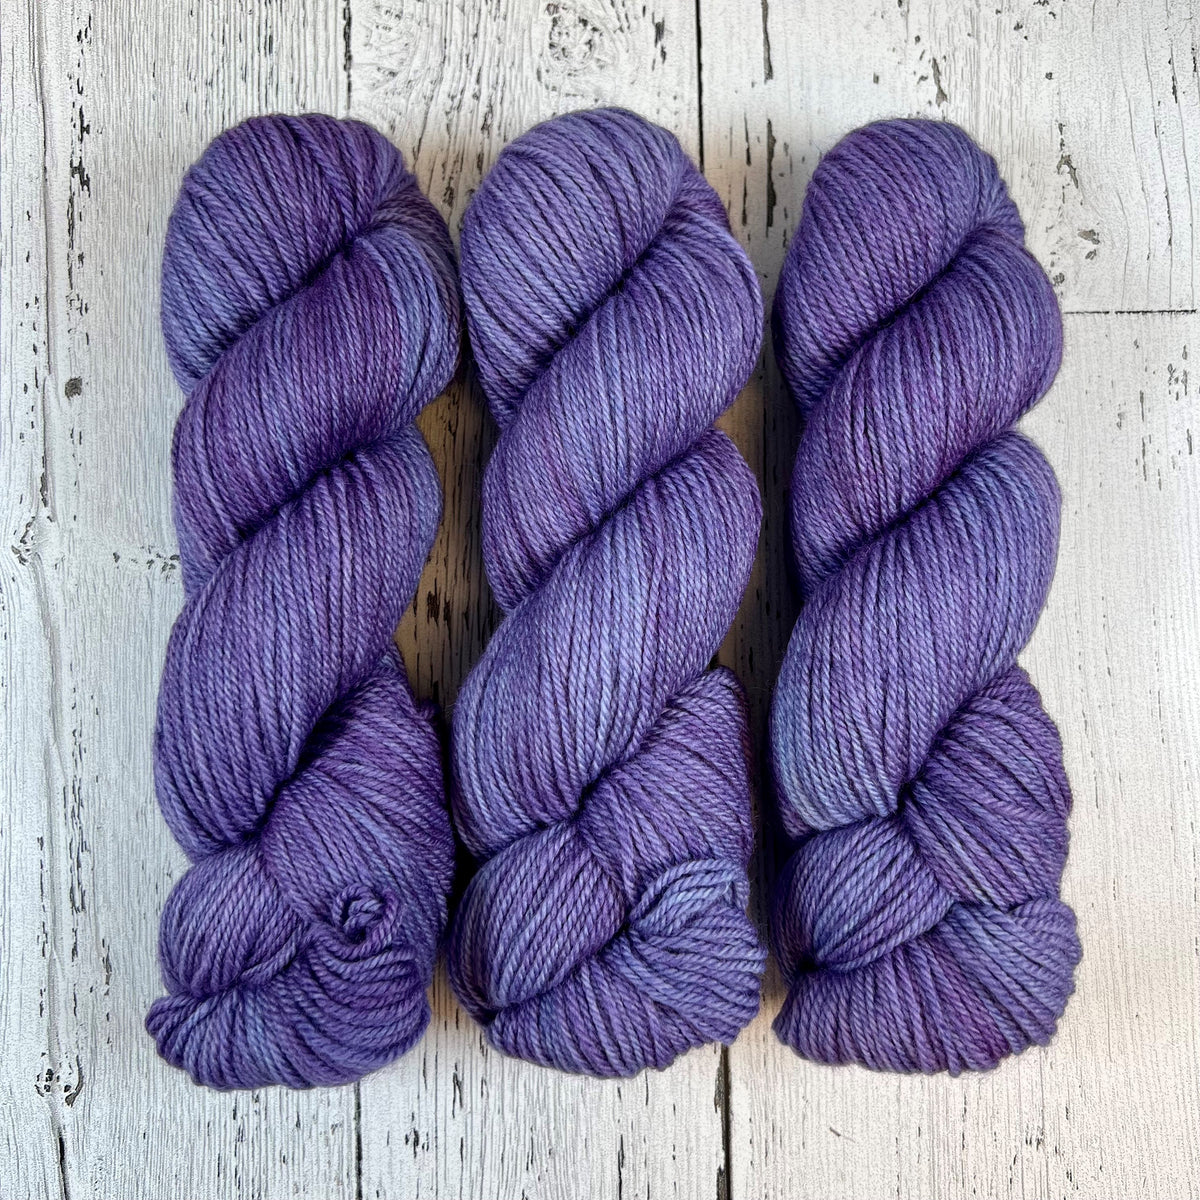 Spanish Lavender - Herlig DK - Dyed Stock